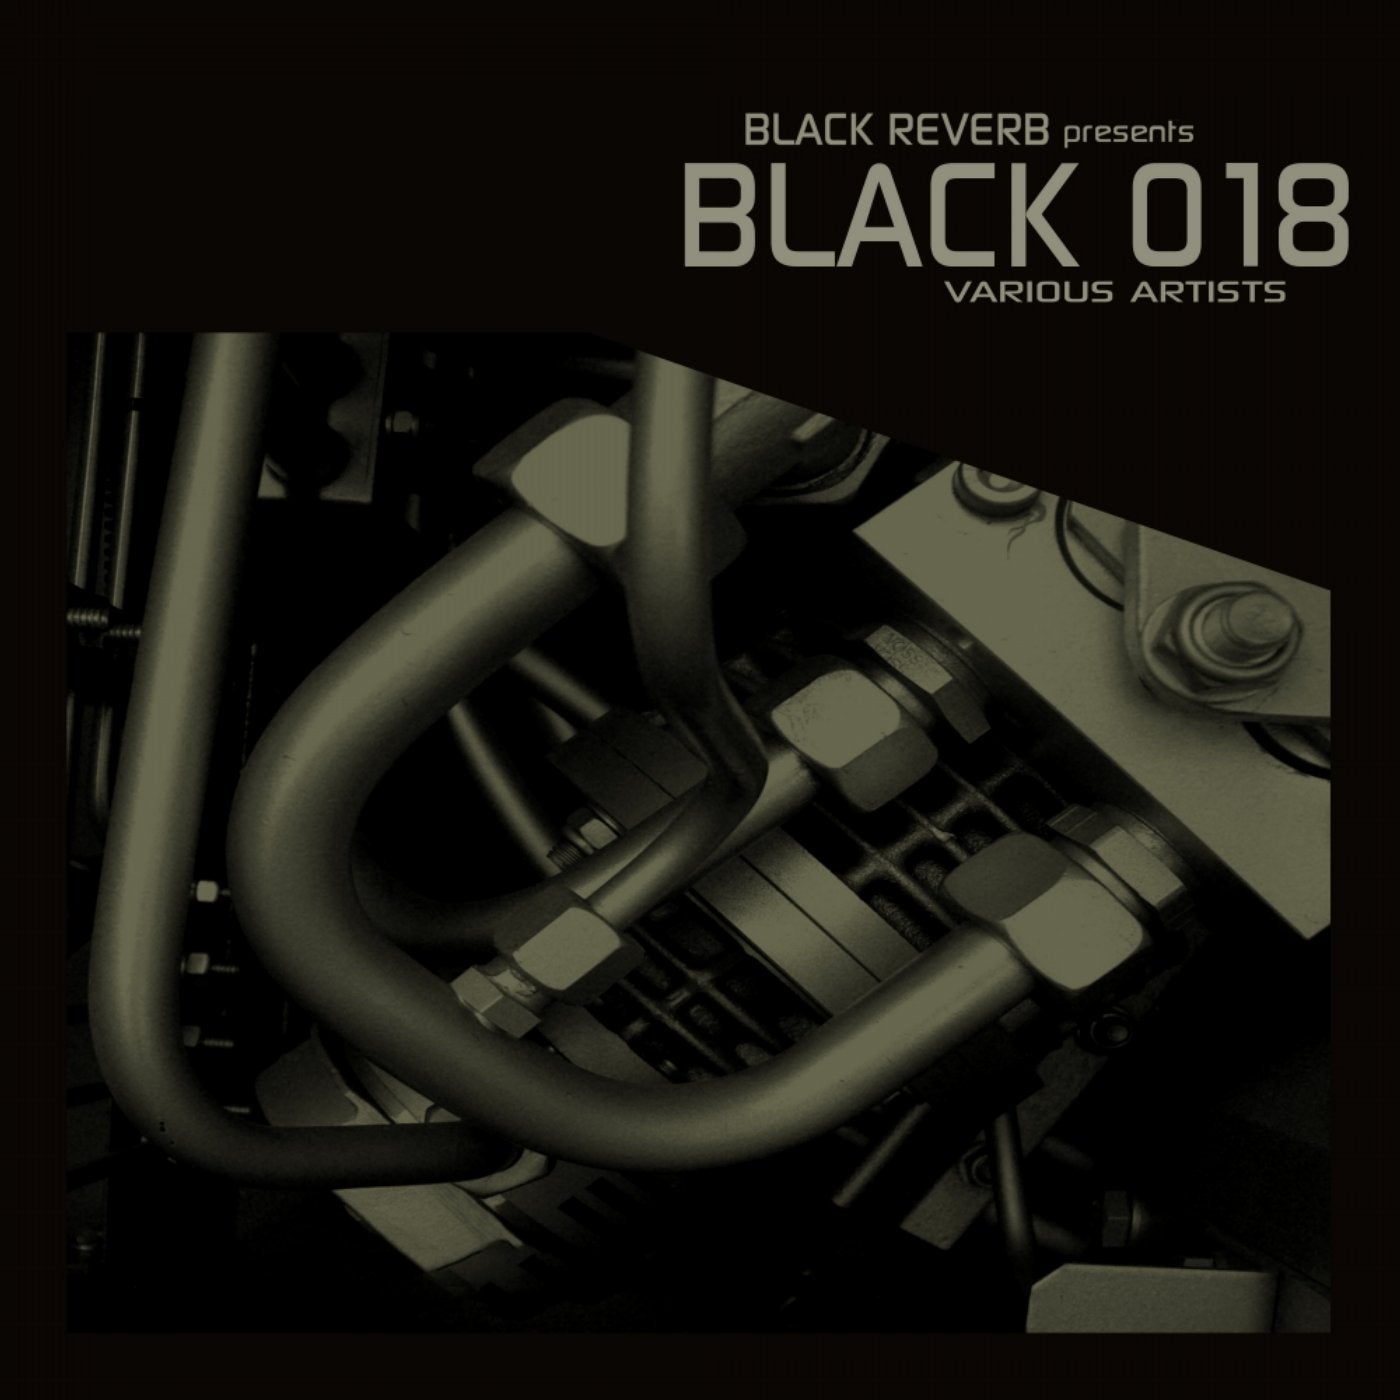 Black 018